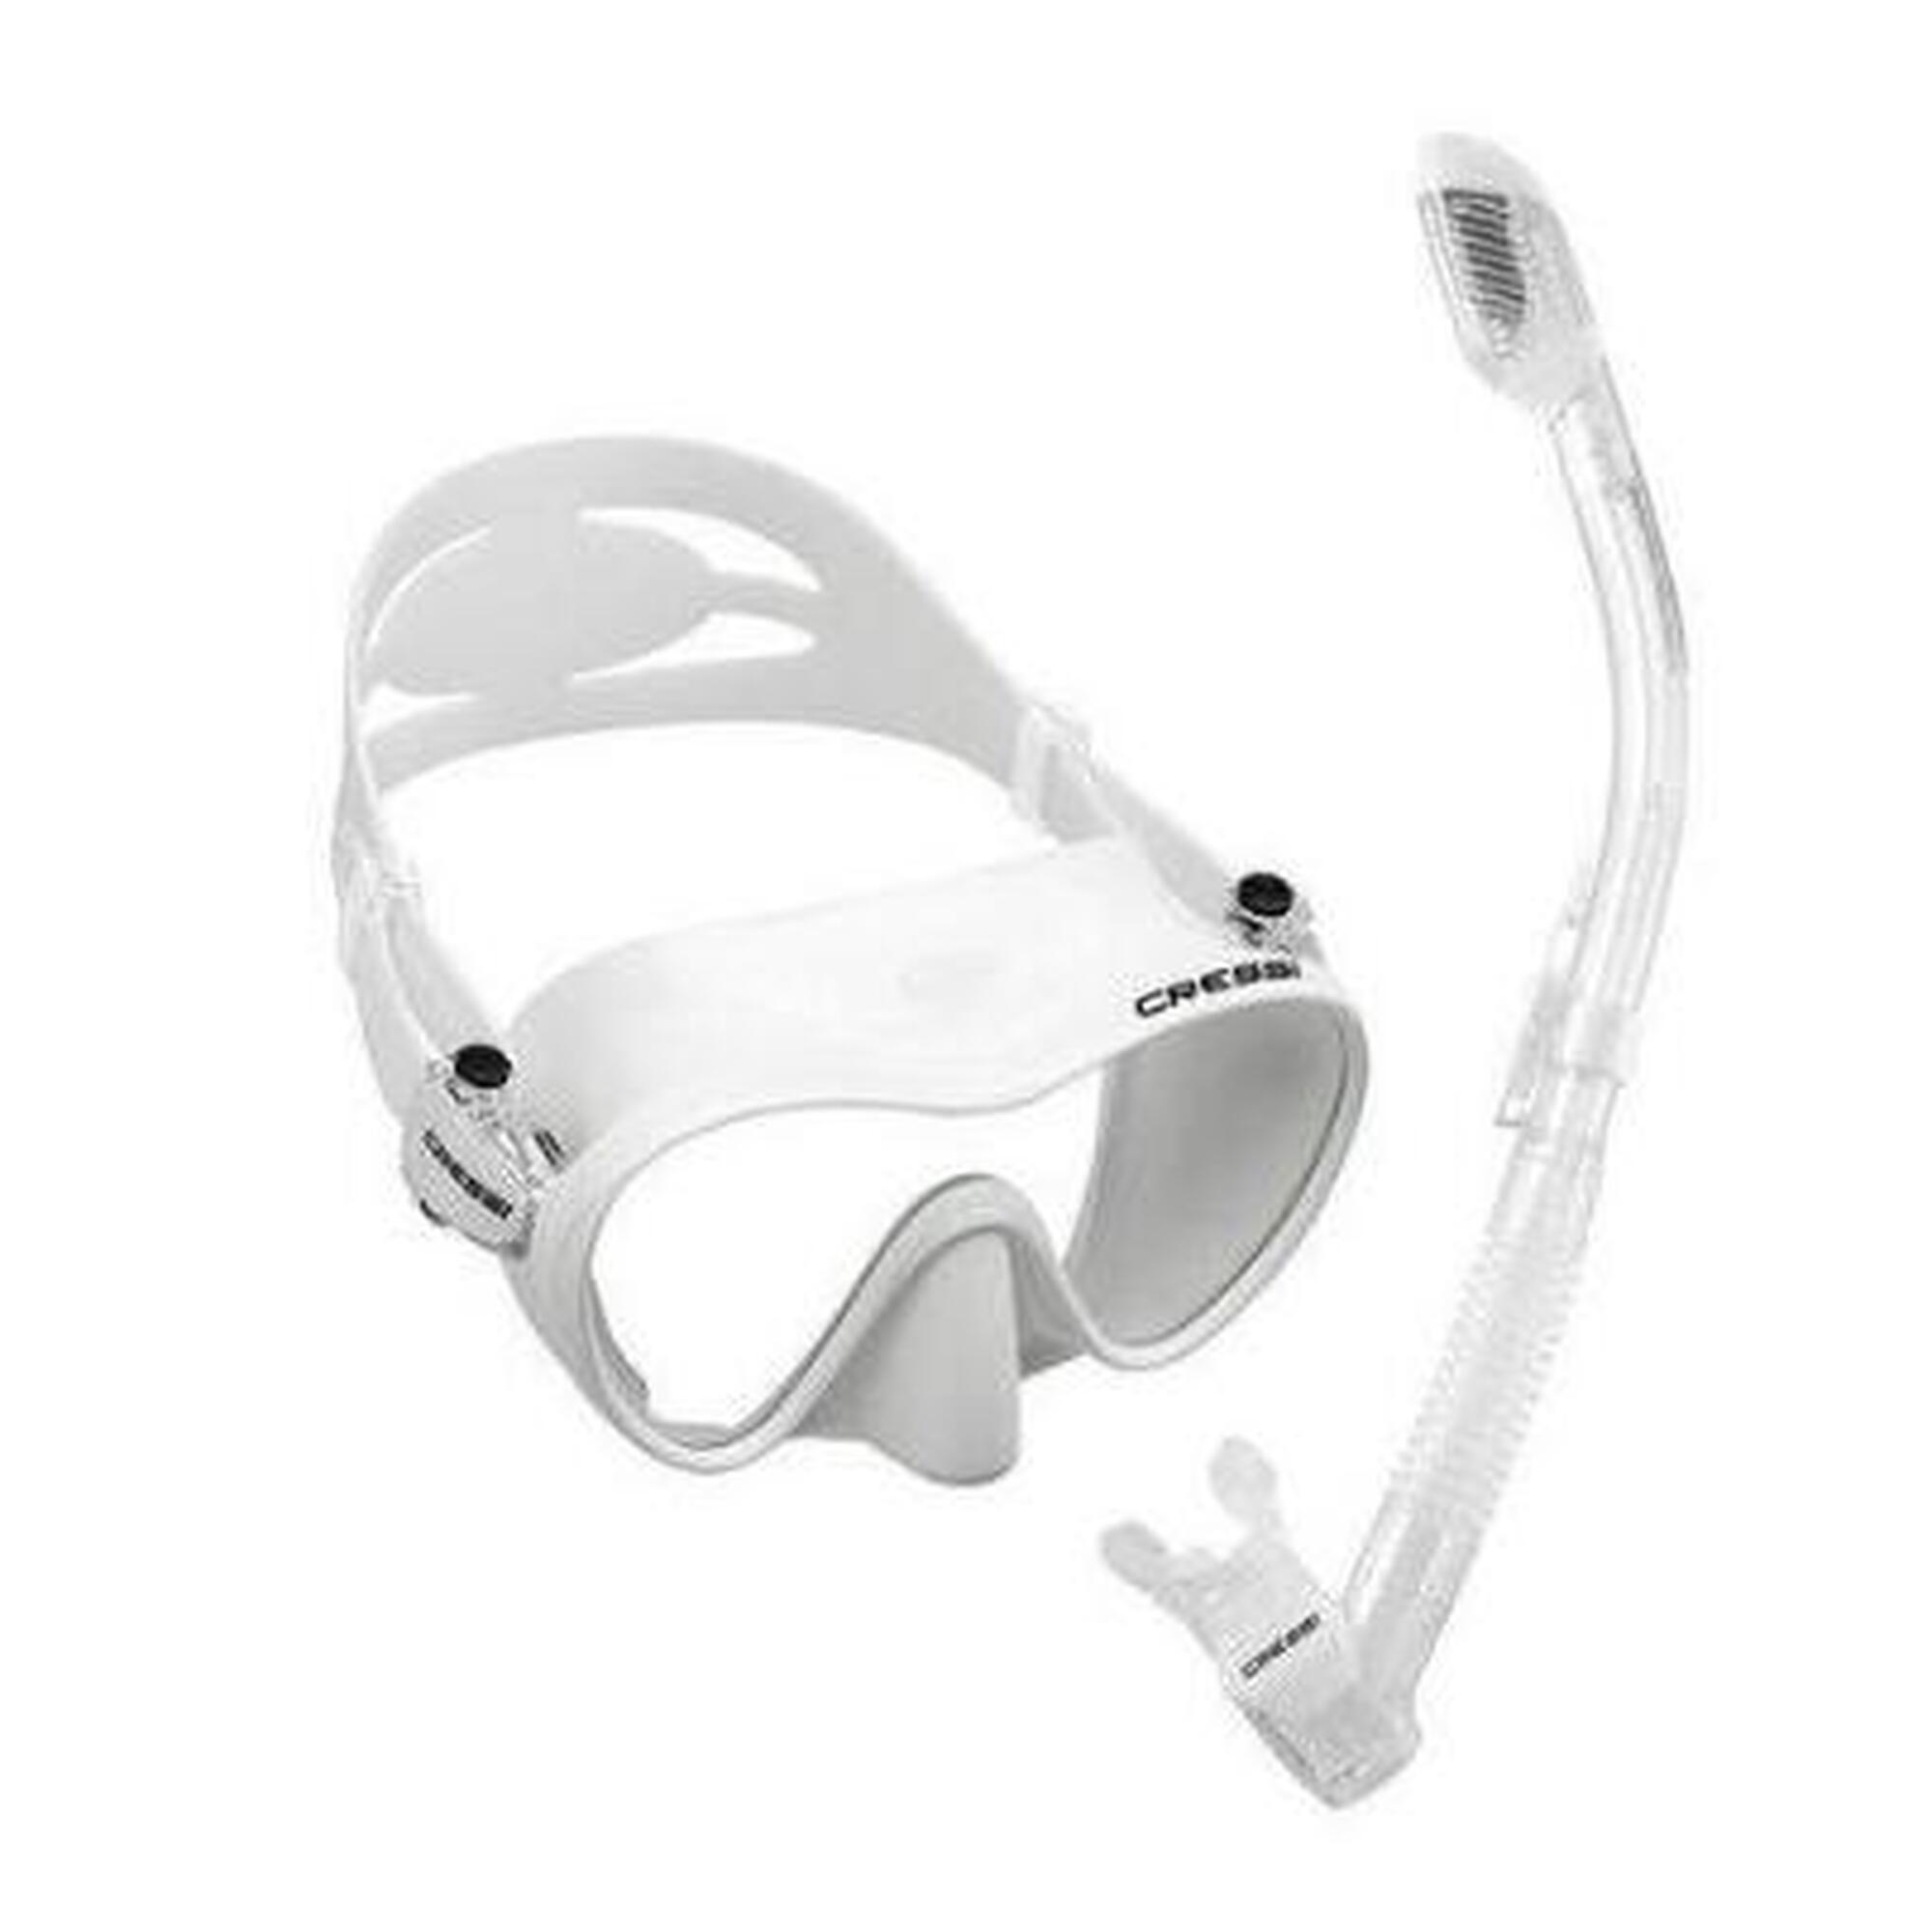 F1 Frameless mask + Dry Snorkel Combo - White